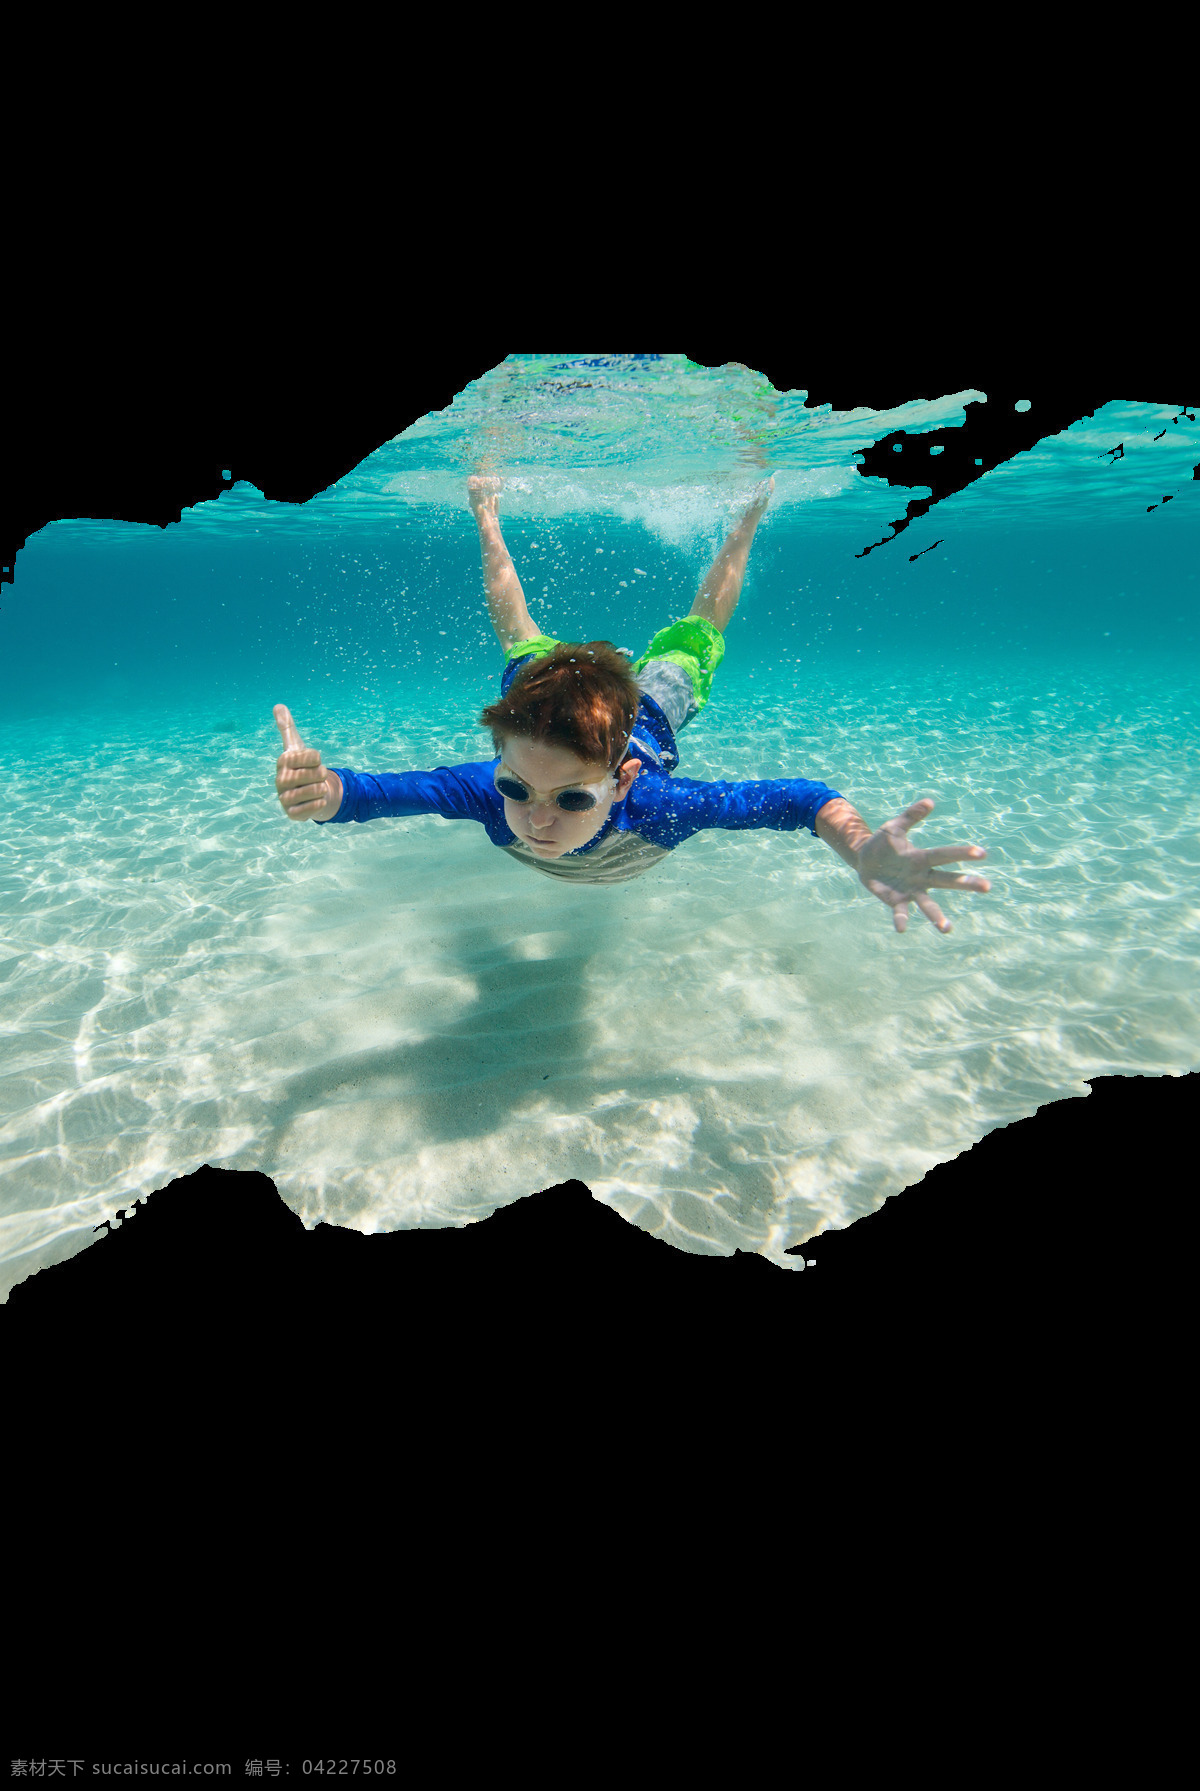 真实 游泳 人物 潜水 夏季 海报素材 广告素材 夏天 实物素材 png素材